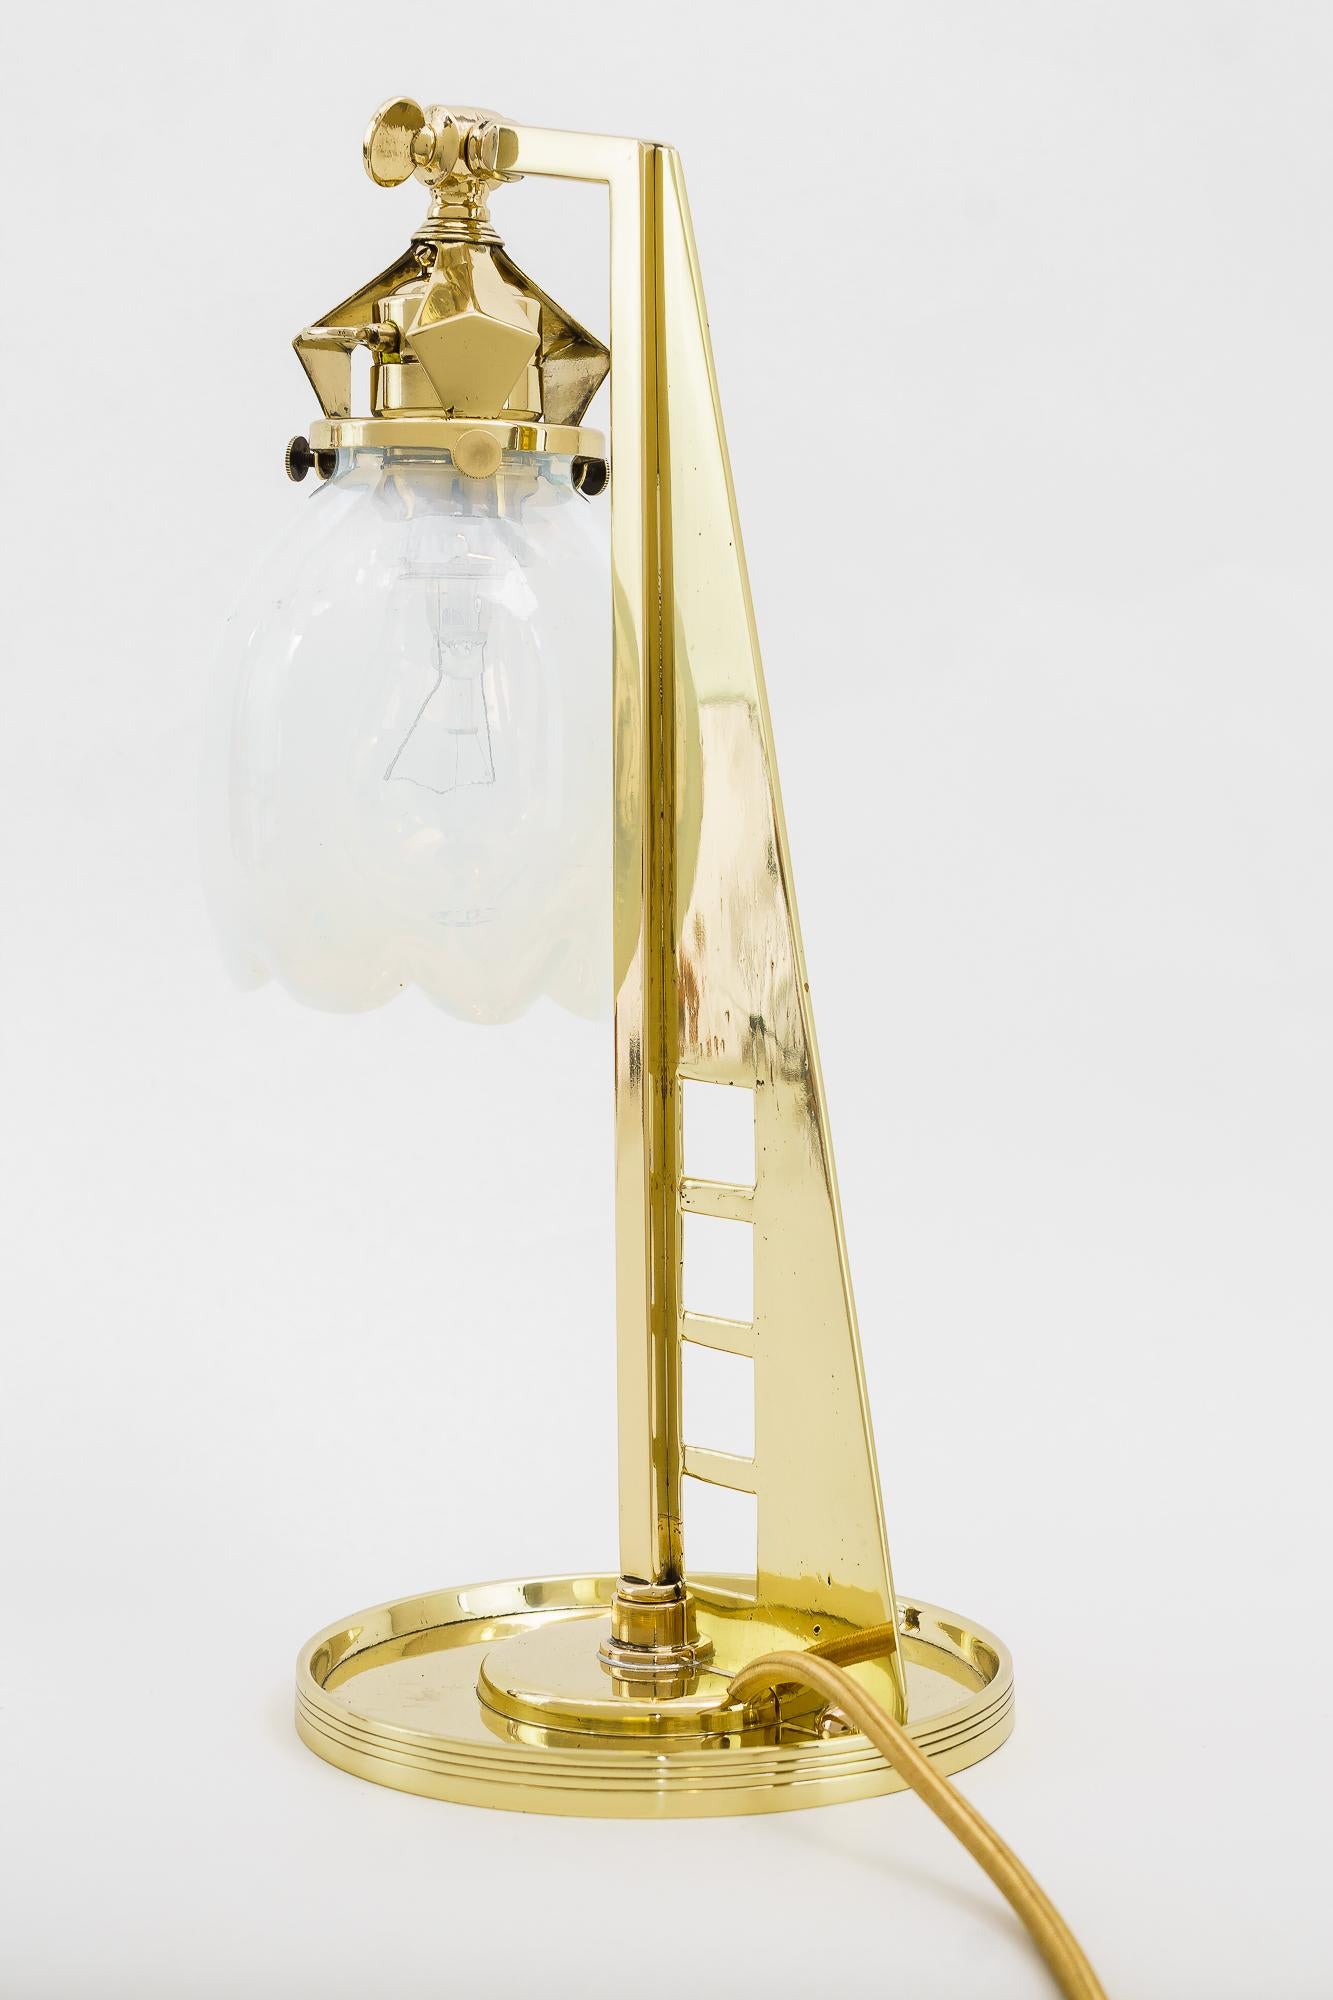 Rare lampe de table jugendstil vienne autour des années 1910
Polis et émaillés au four
Abat-jour original en verre opalin.